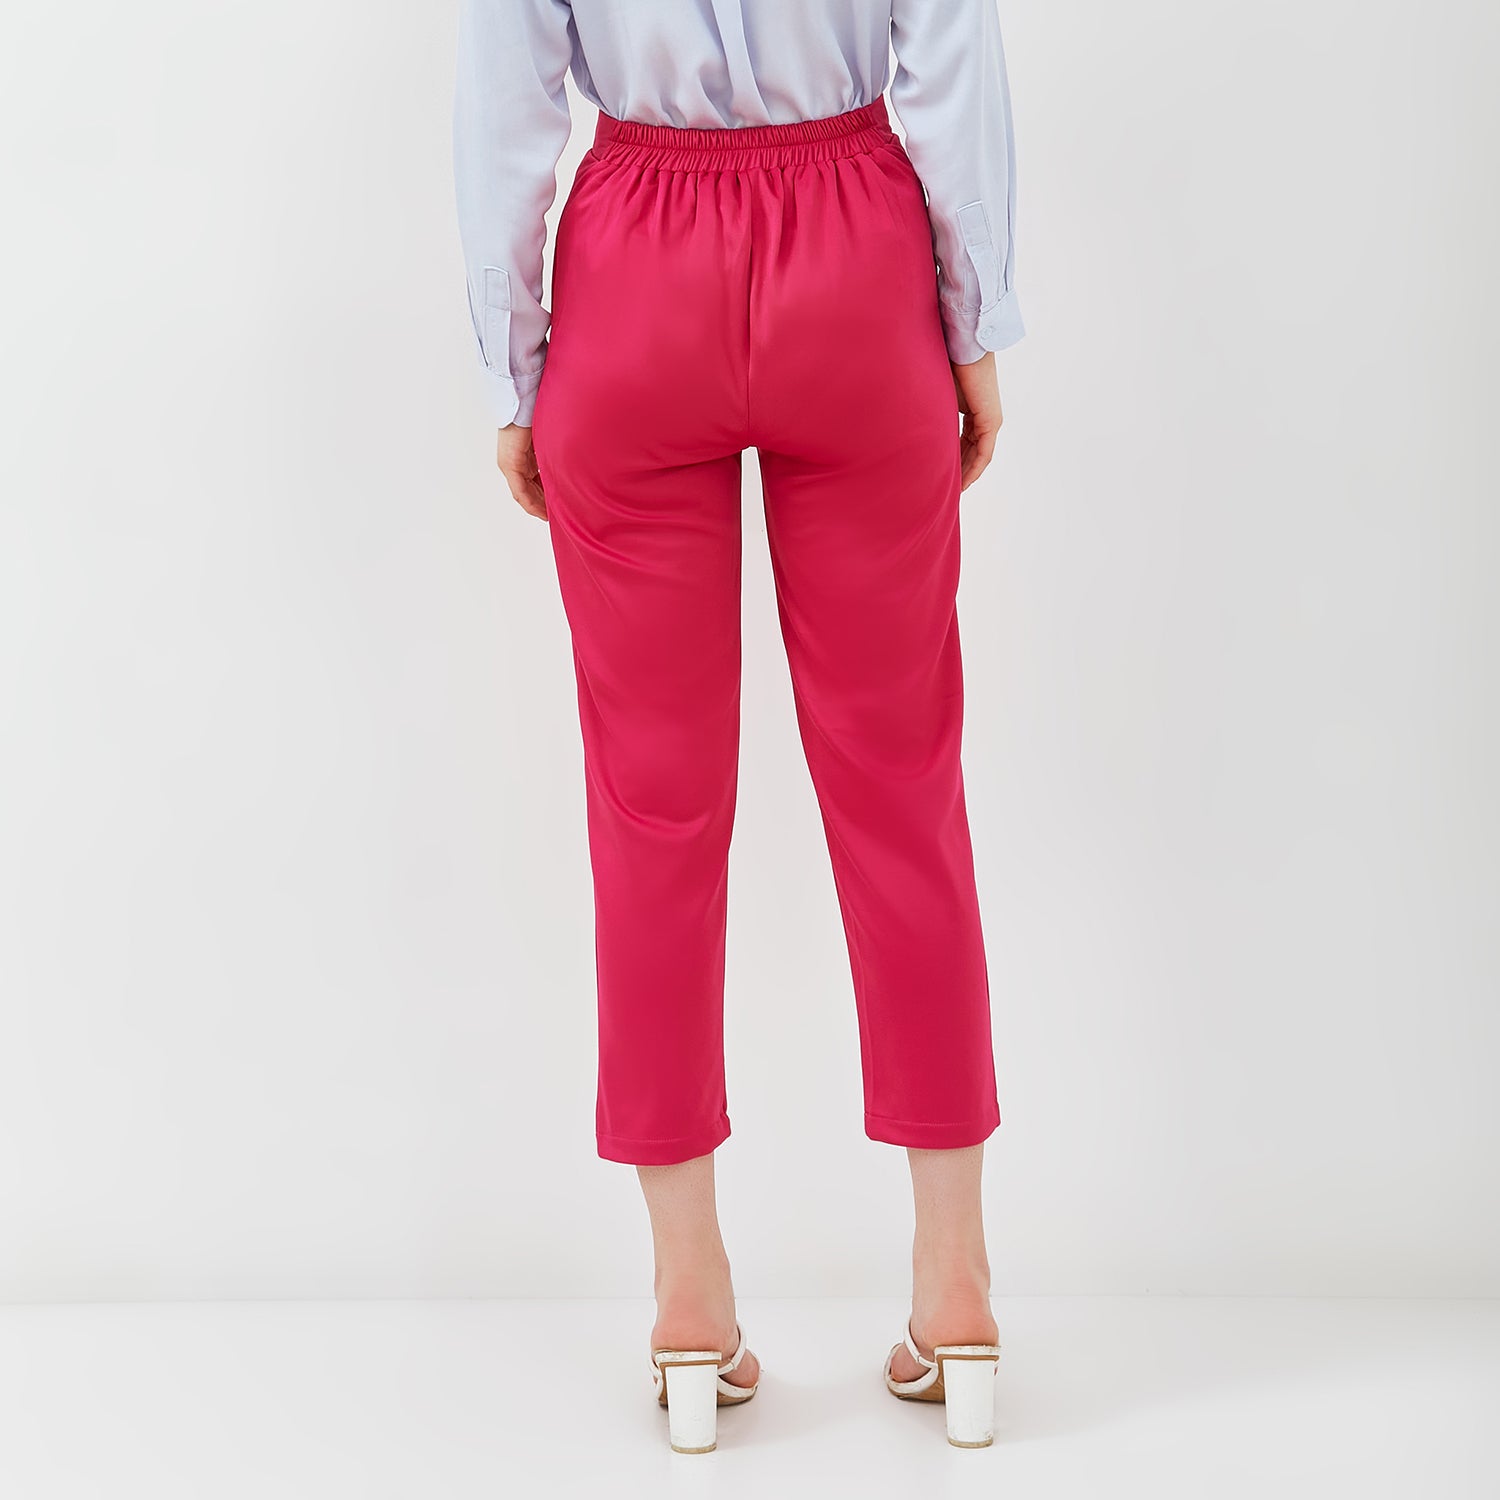 New Circa Pants - Celana Kantor Wanita [MYPNW 07B]